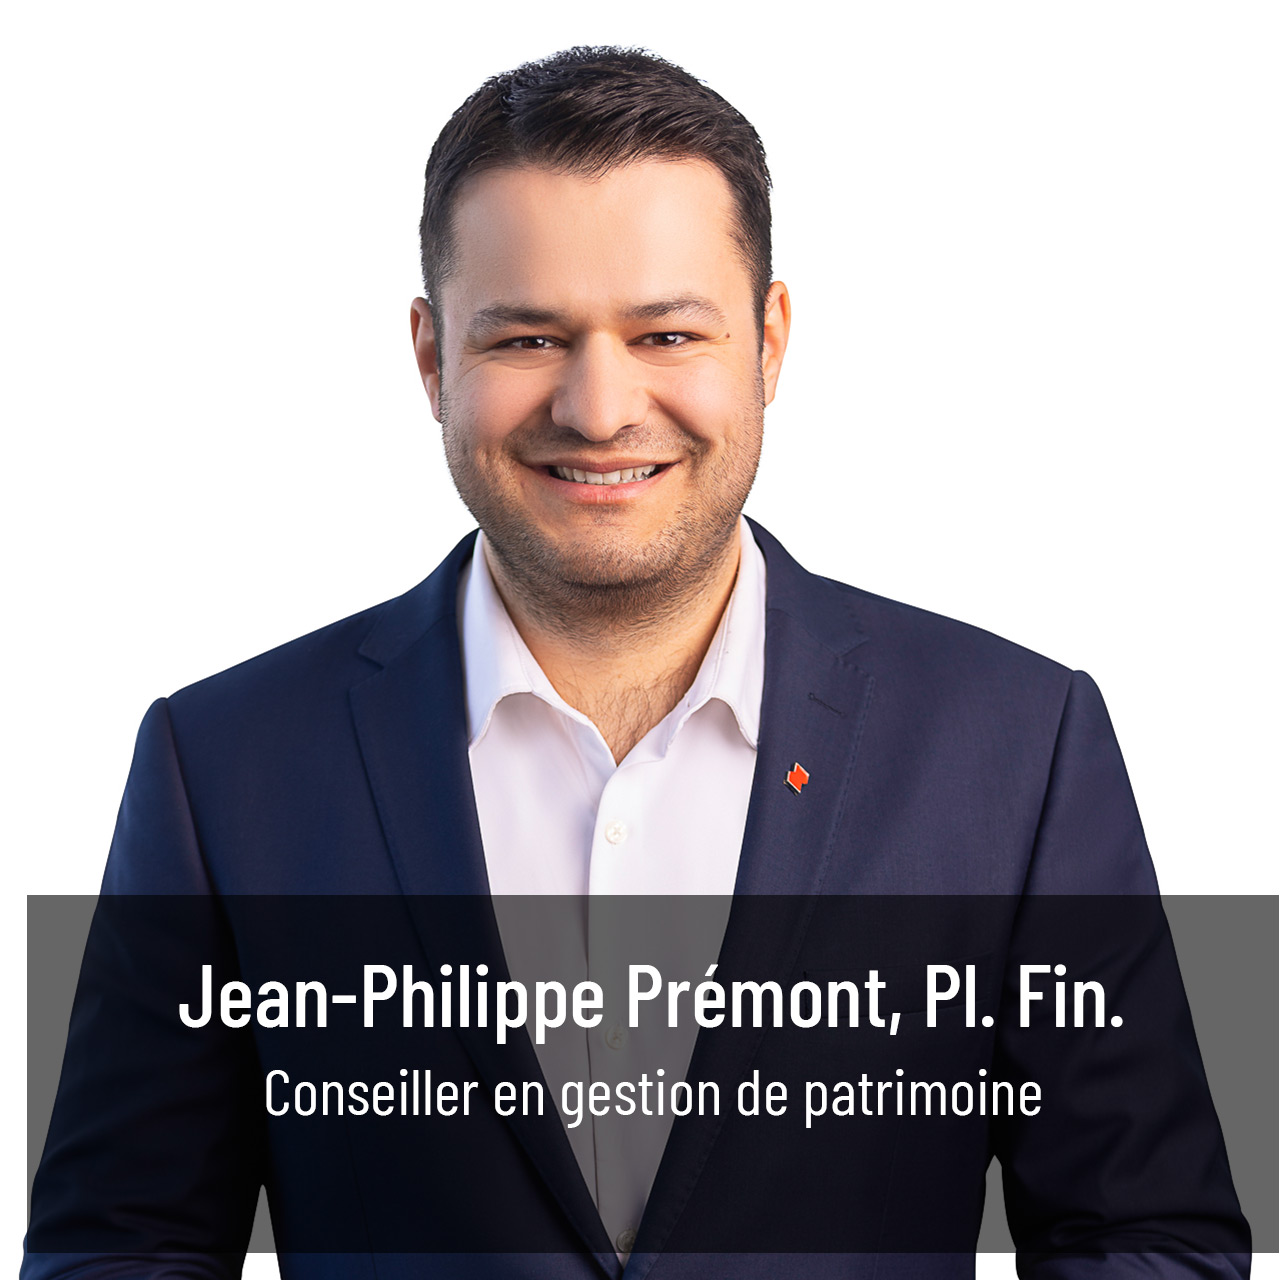 Jean-Philippe Premont